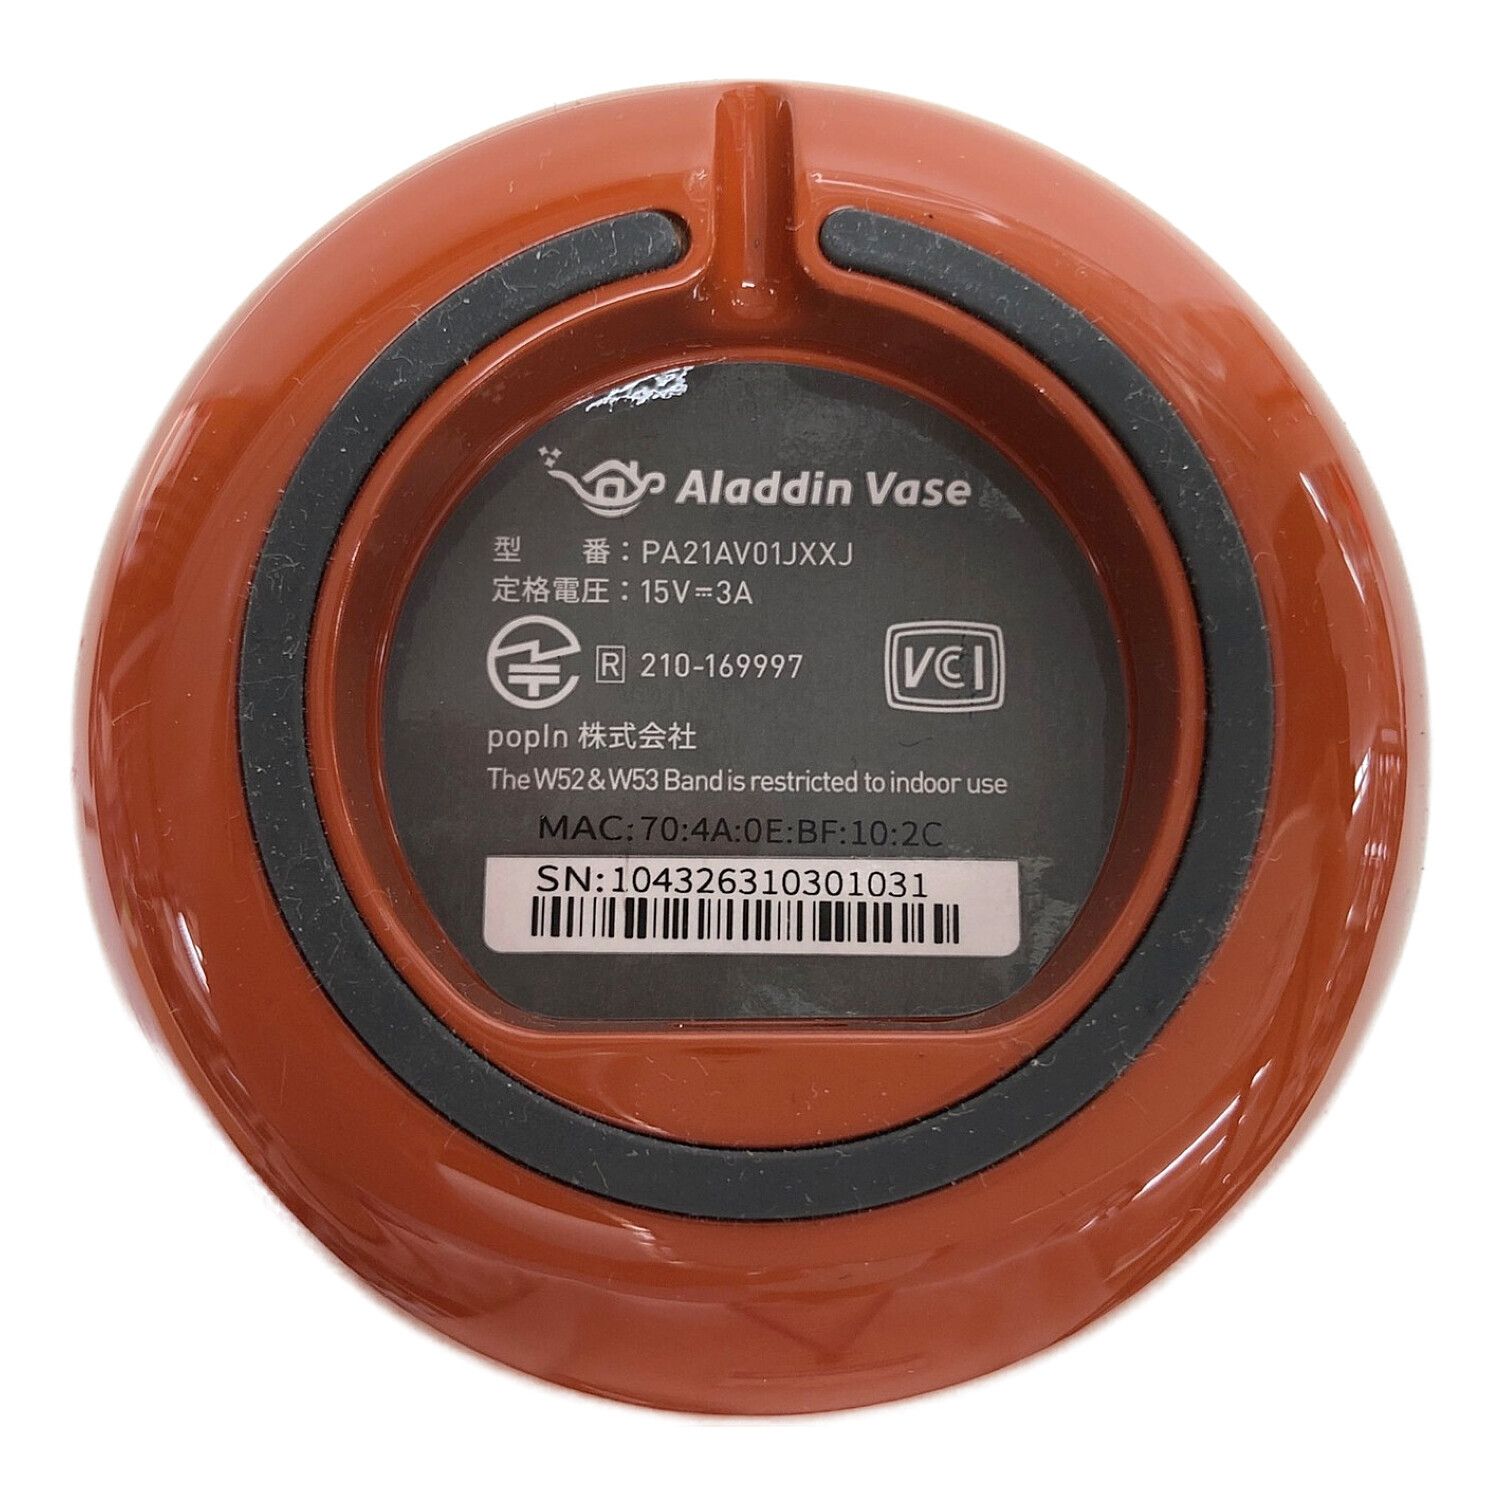 アラジンベース Aladdin Vase プロジェクタ PA21AV01JXXJ69800円